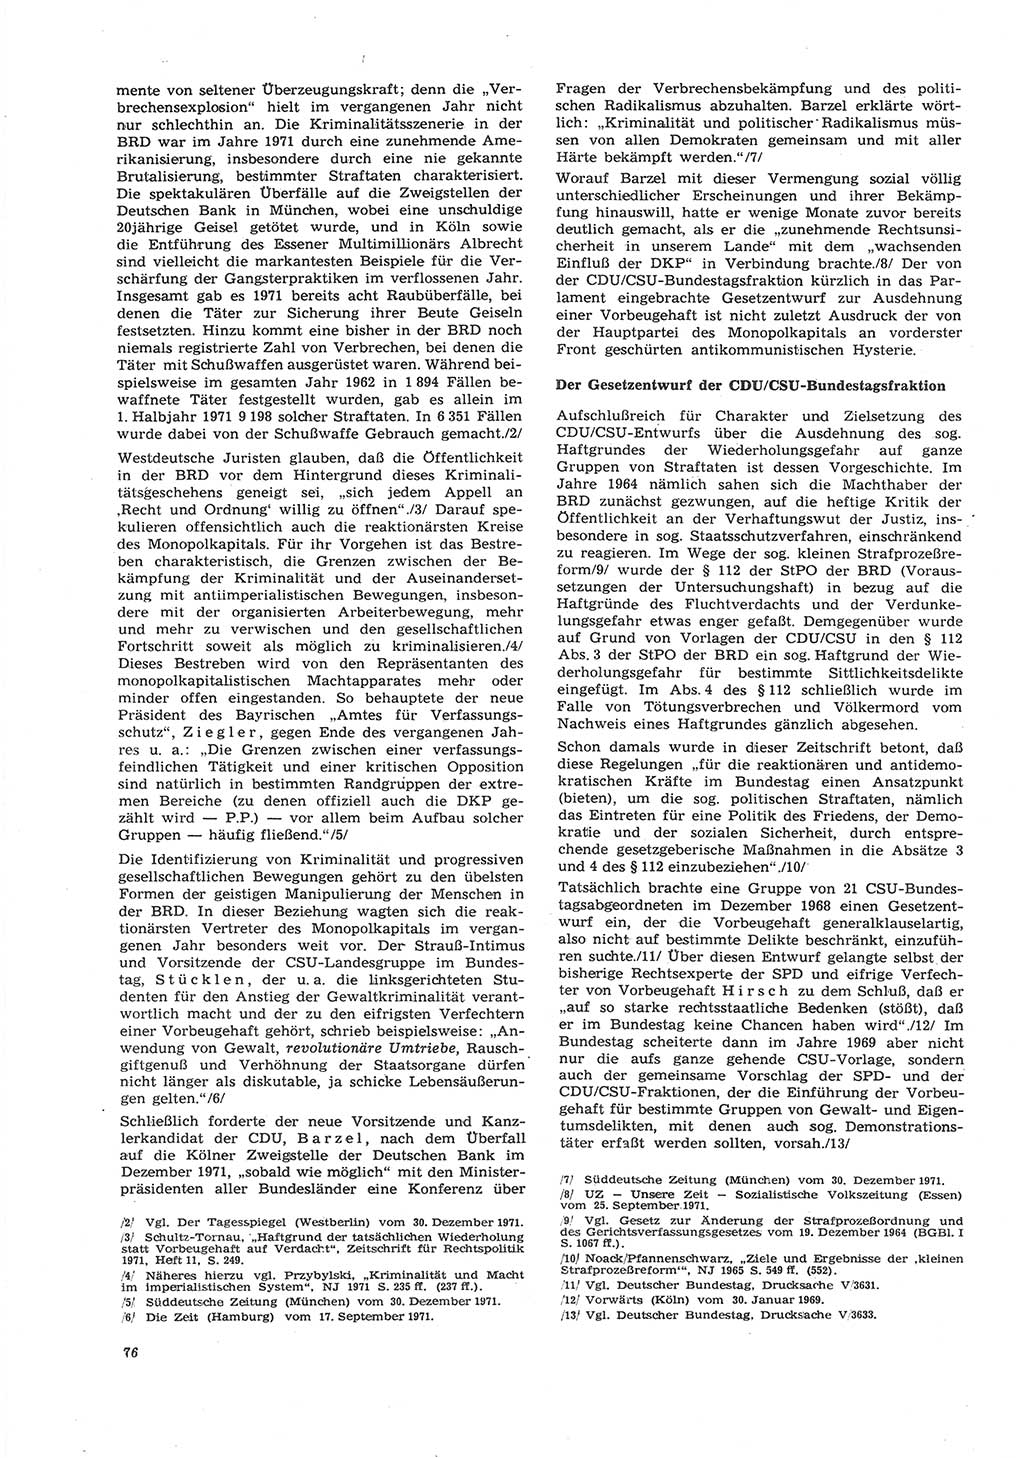 Neue Justiz (NJ), Zeitschrift für Recht und Rechtswissenschaft [Deutsche Demokratische Republik (DDR)], 26. Jahrgang 1972, Seite 76 (NJ DDR 1972, S. 76)